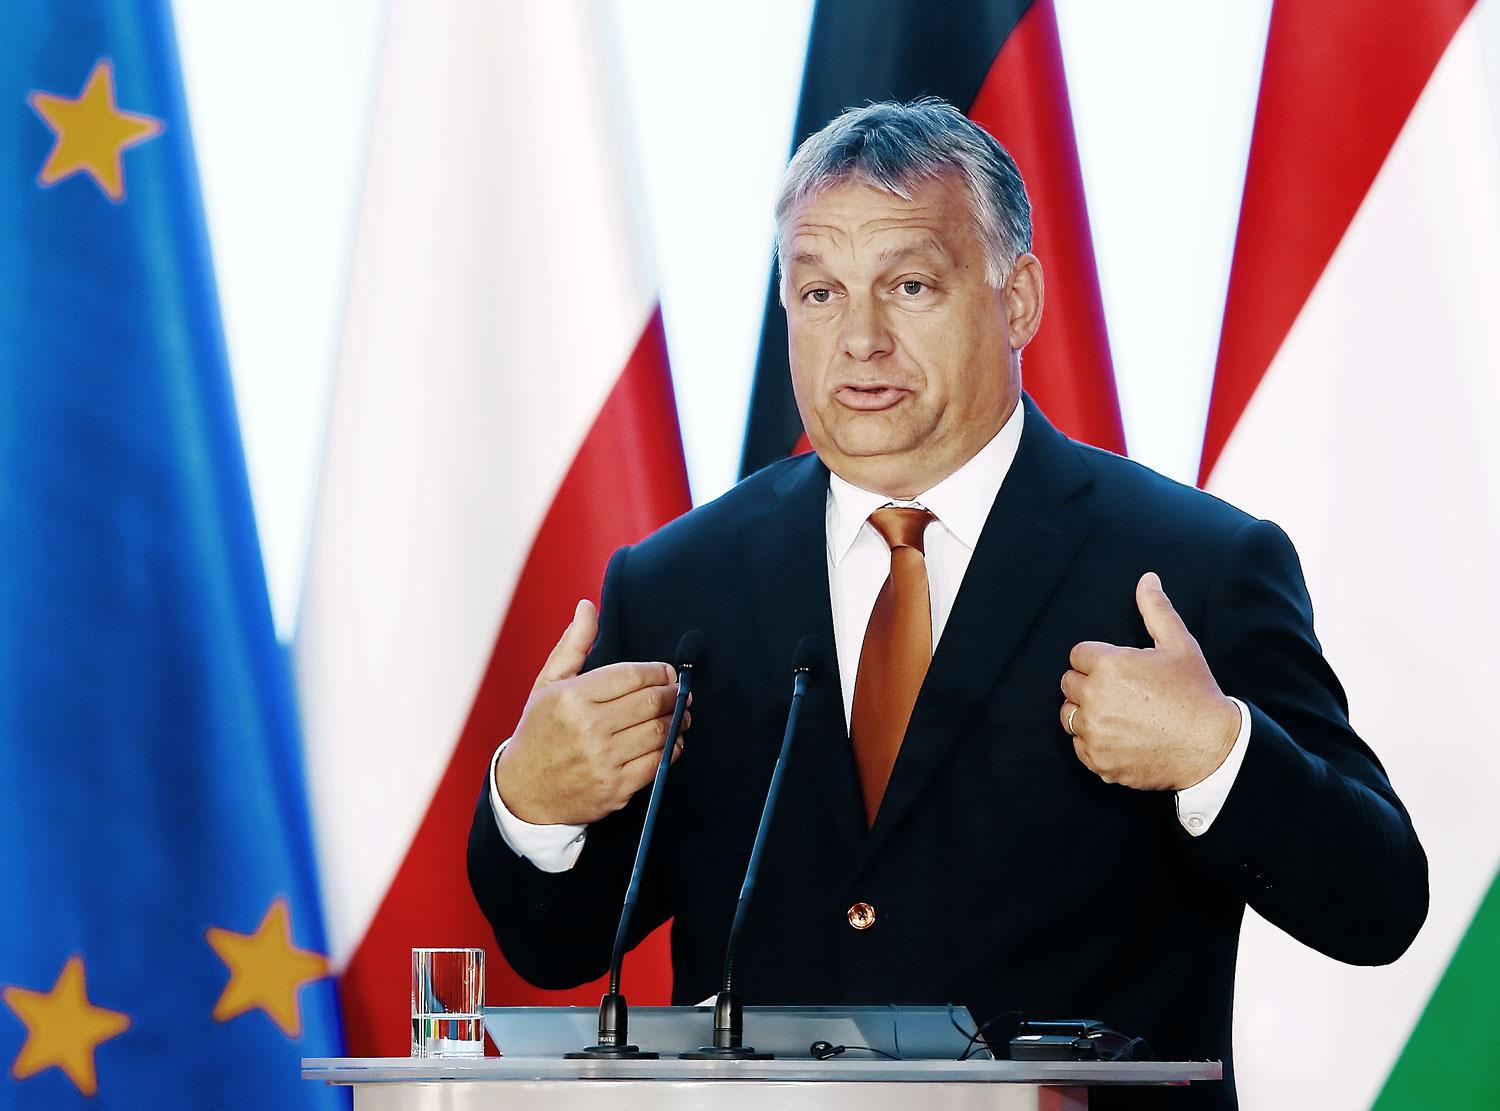 Reménytelennek látszó harc is hozhat politikai népszerűséget Orbán számára